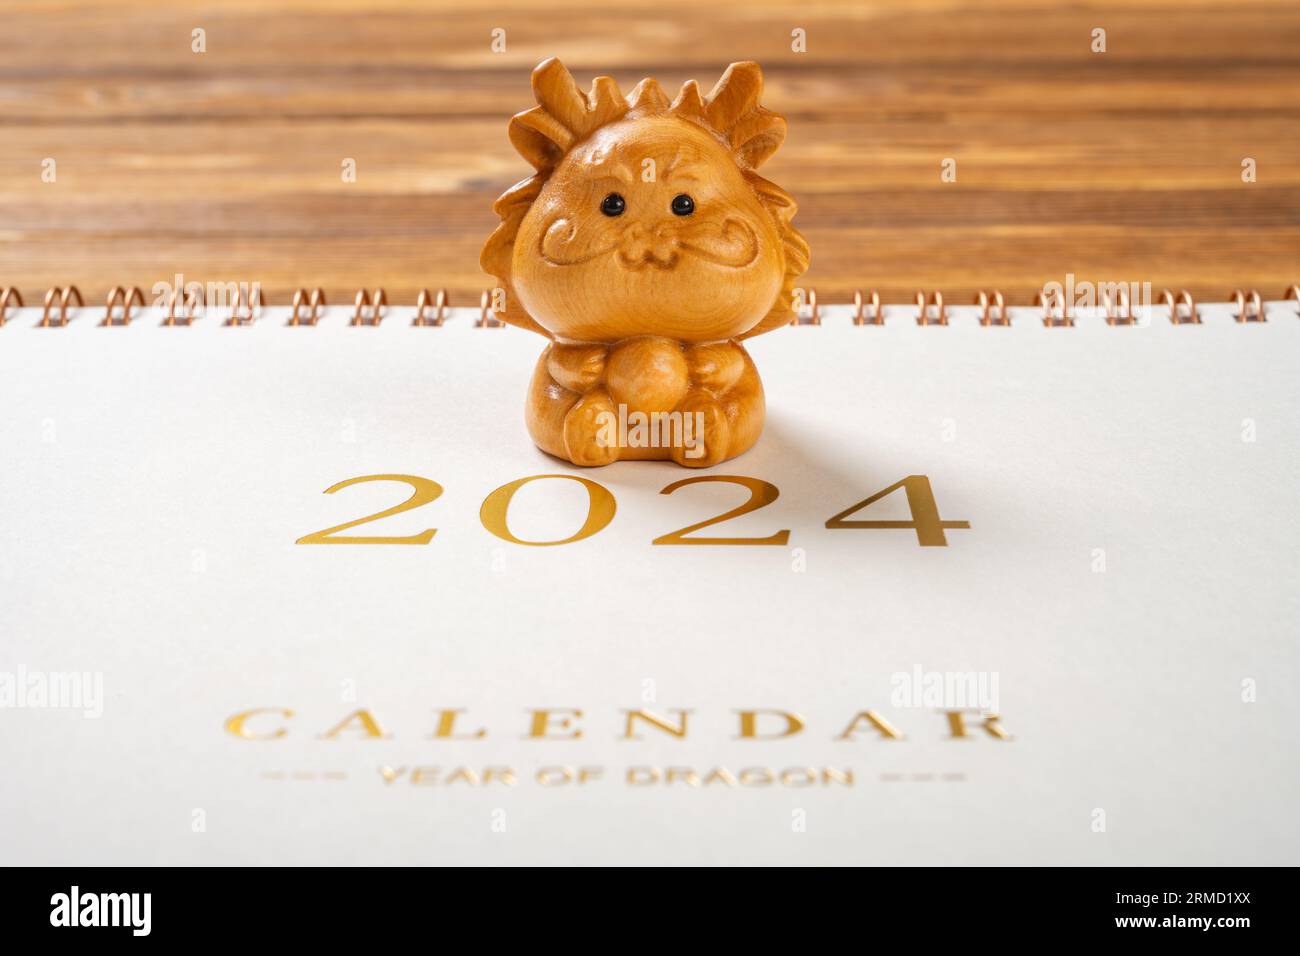 Dragon mascot with a 2024 calendar at horizontal composition no logo no trademark Stock Photo